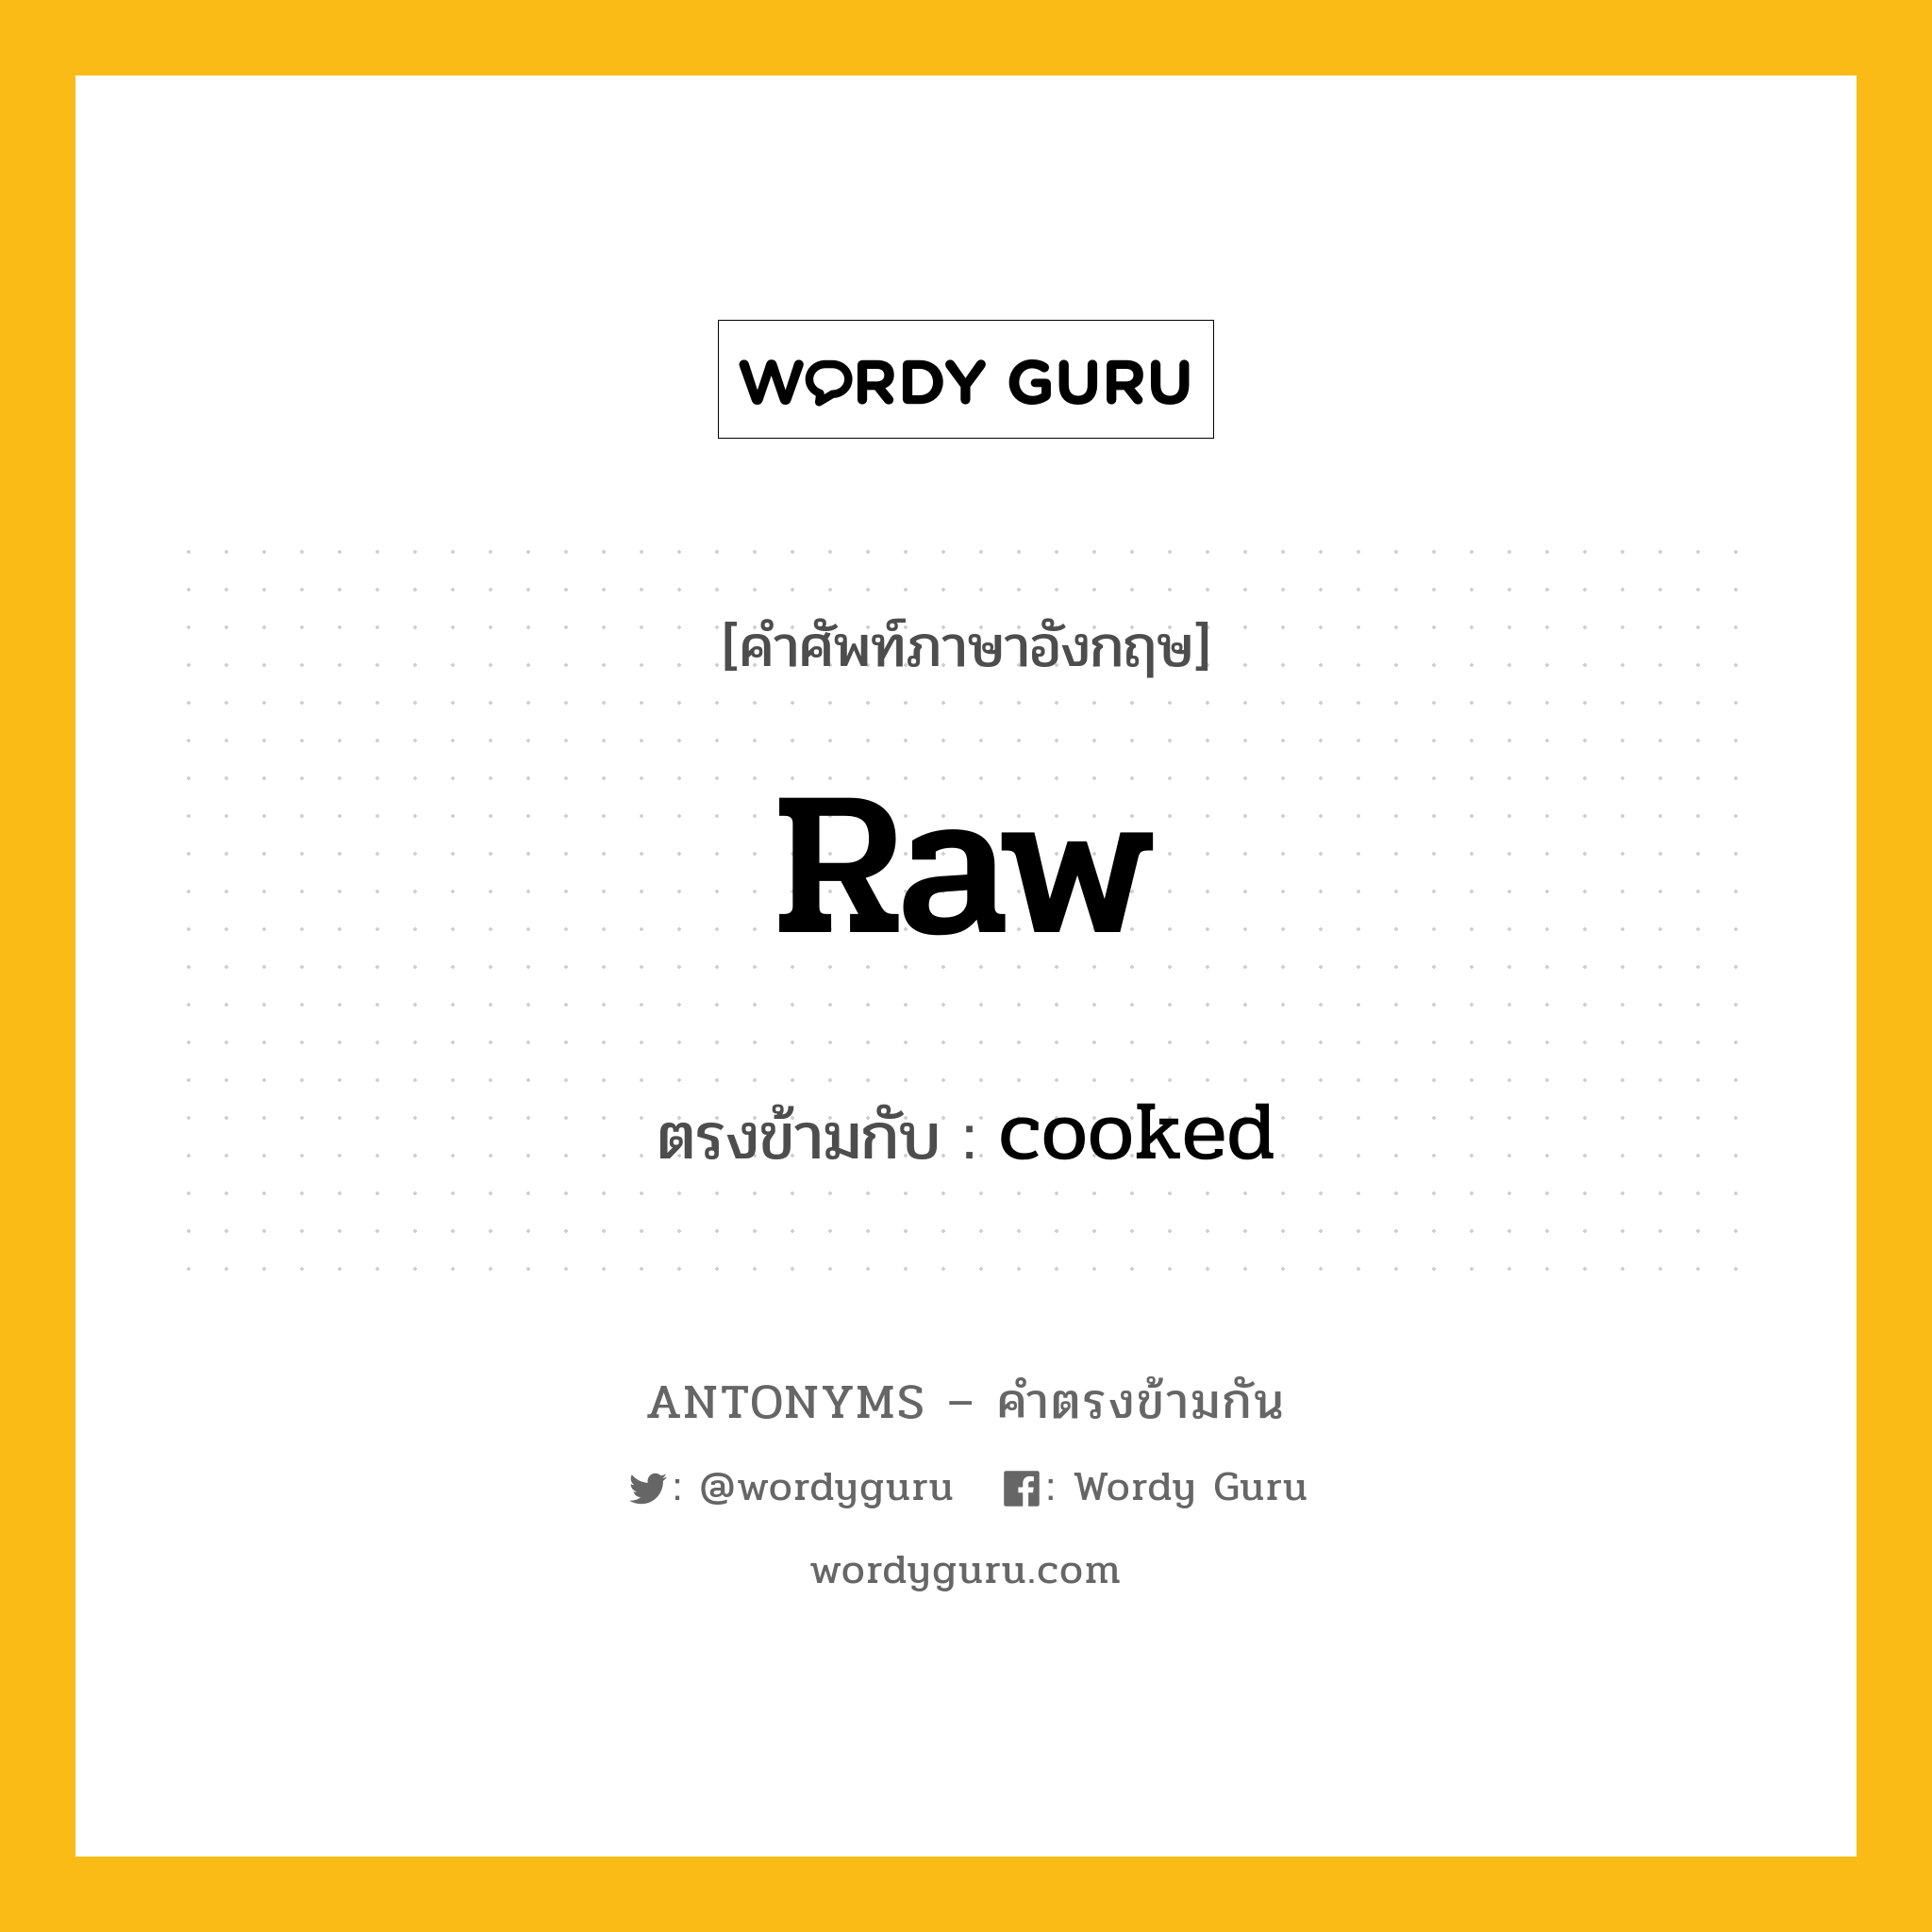 raw เป็นคำตรงข้ามกับคำไหนบ้าง?, คำศัพท์ภาษาอังกฤษ raw ตรงข้ามกับ cooked หมวด cooked